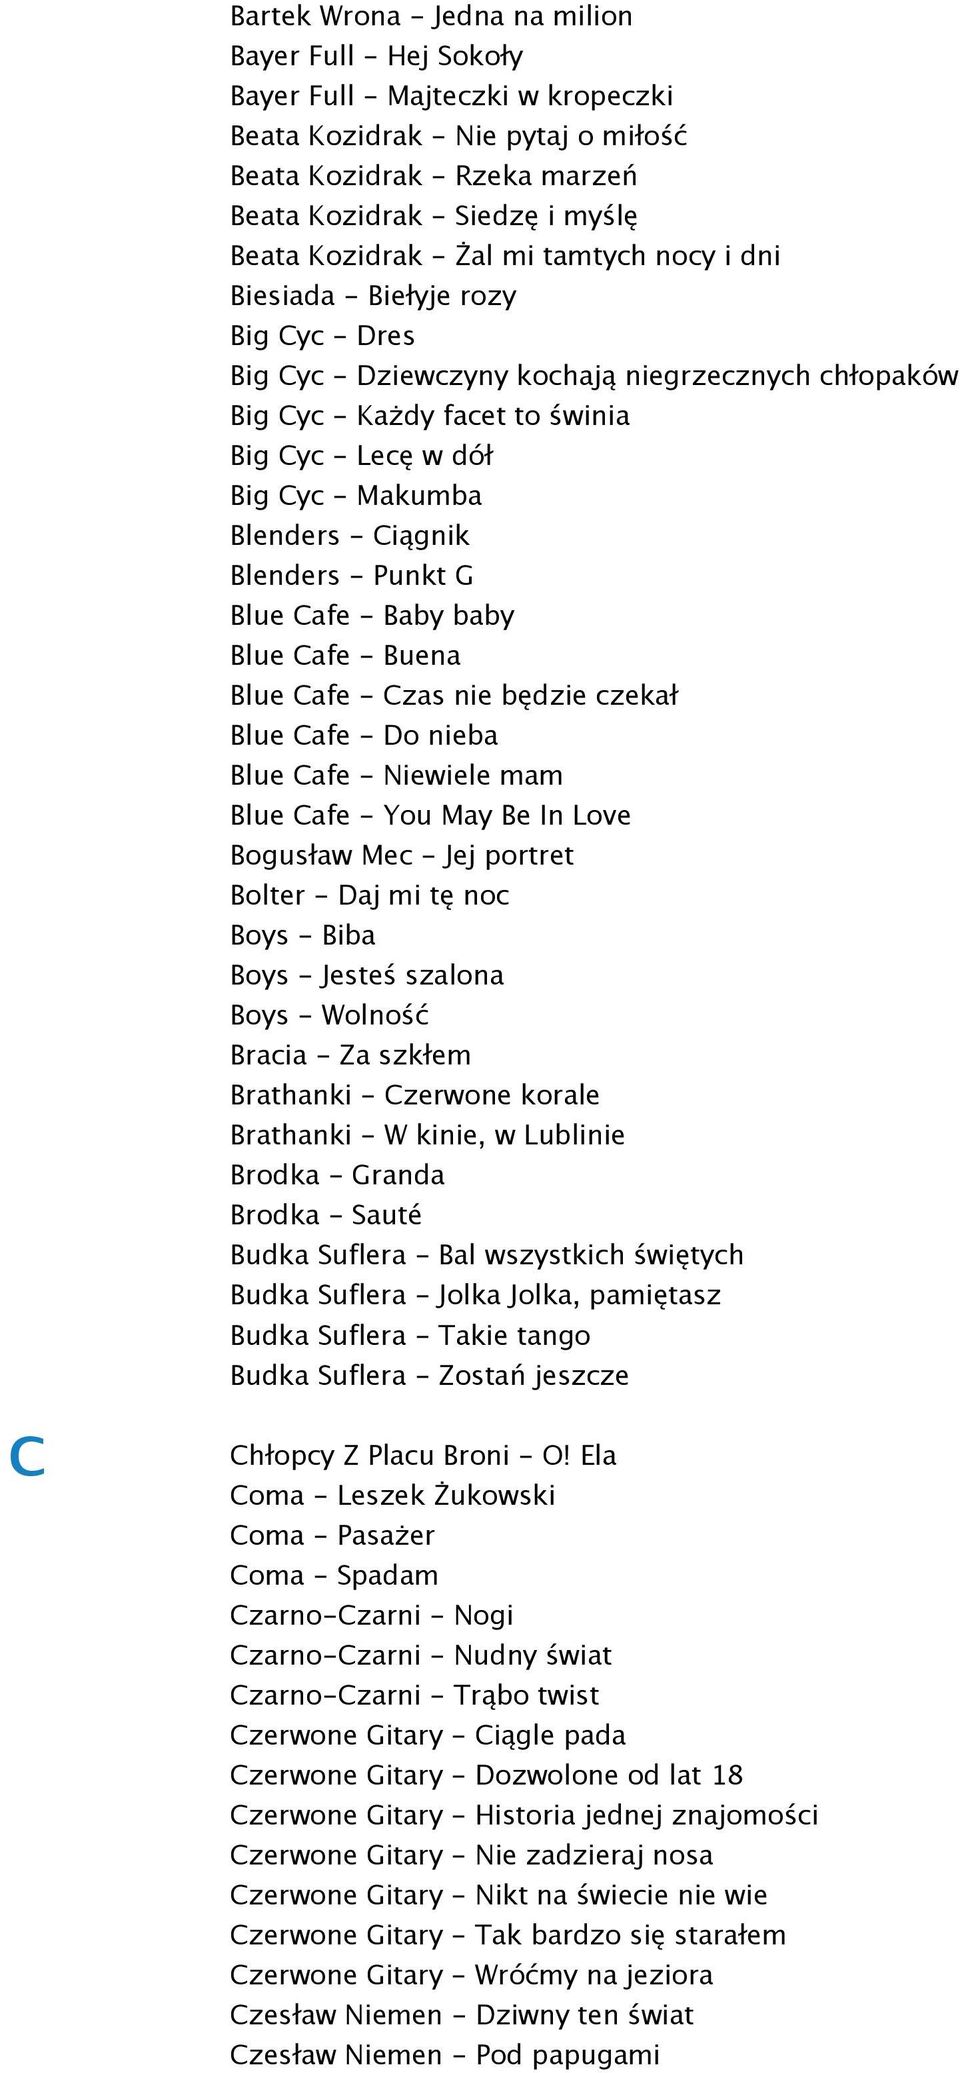 Blenders - Ciągnik Blenders - Punkt G Blue Cafe - Baby baby Blue Cafe - Buena Blue Cafe - Czas nie będzie czekał Blue Cafe - Do nieba Blue Cafe - Niewiele mam Blue Cafe - You May Be In Love Bogusław